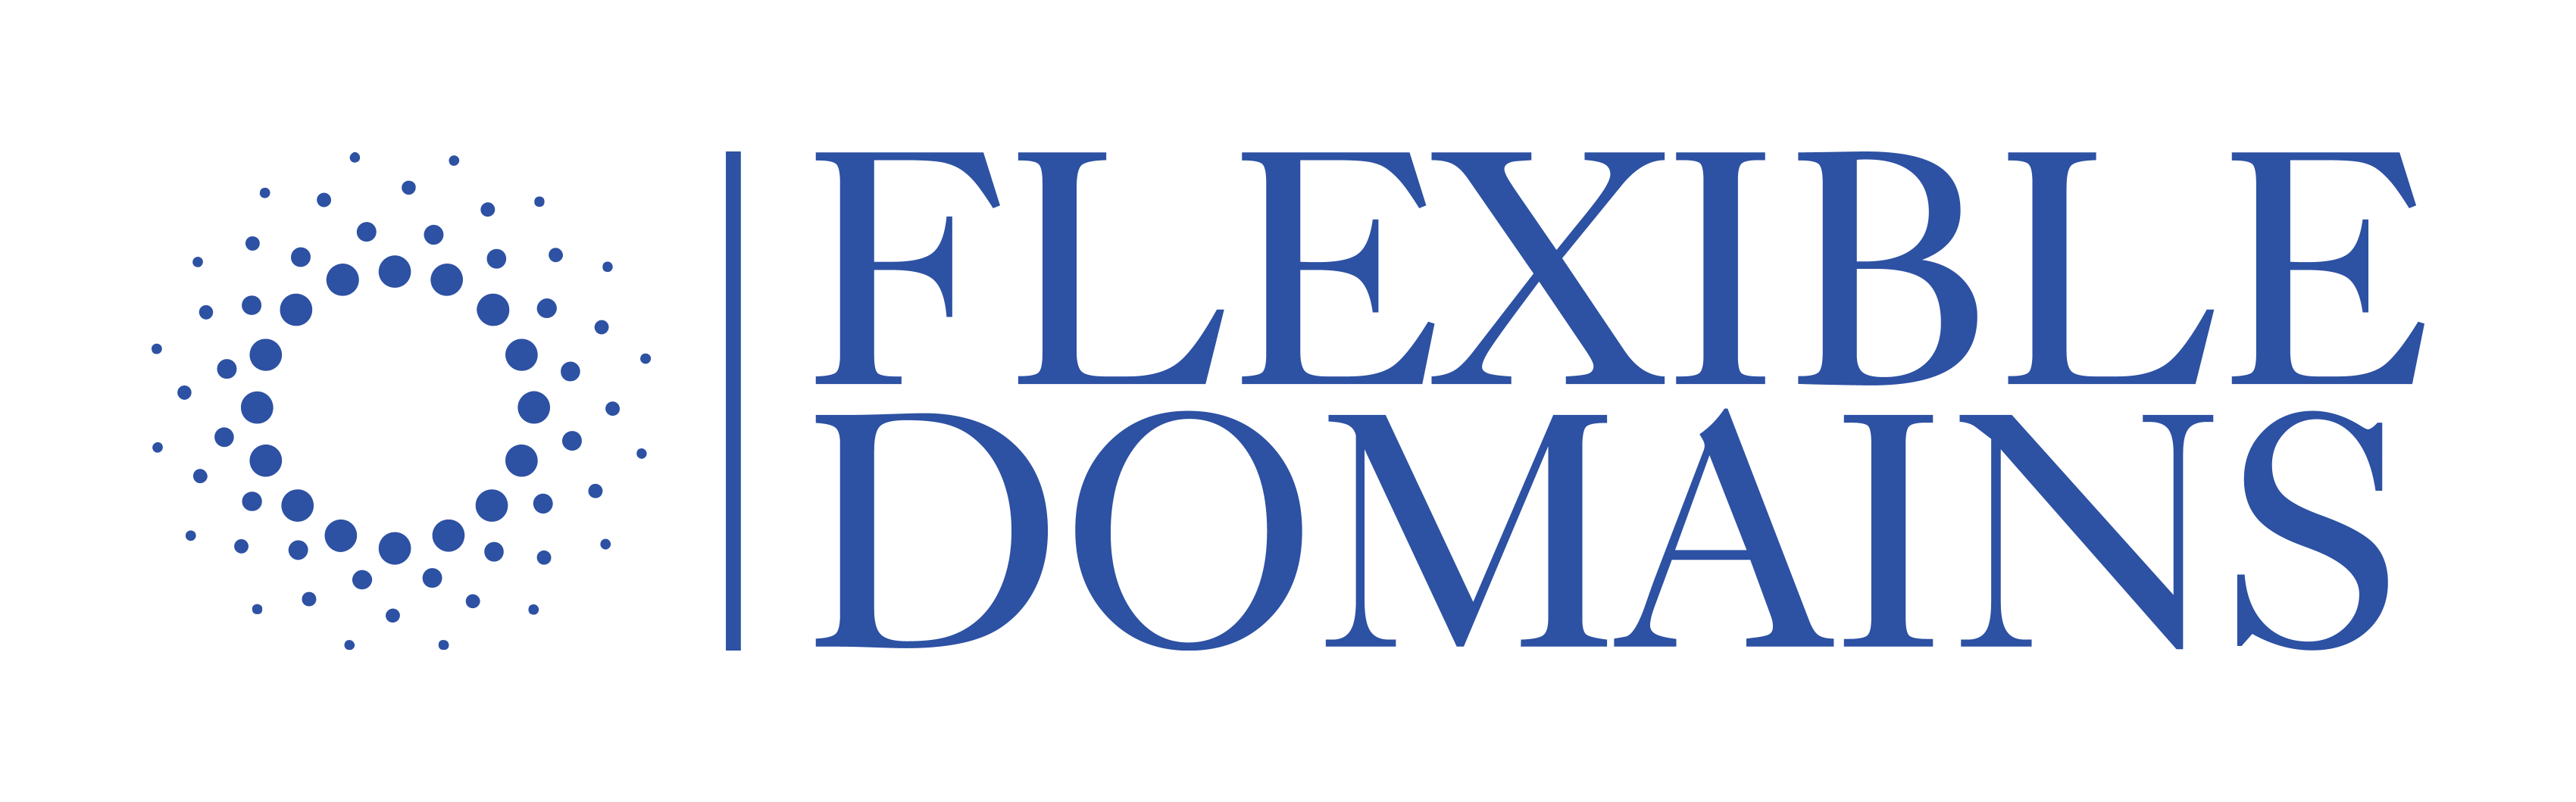 Flexible-Domains Hilfe